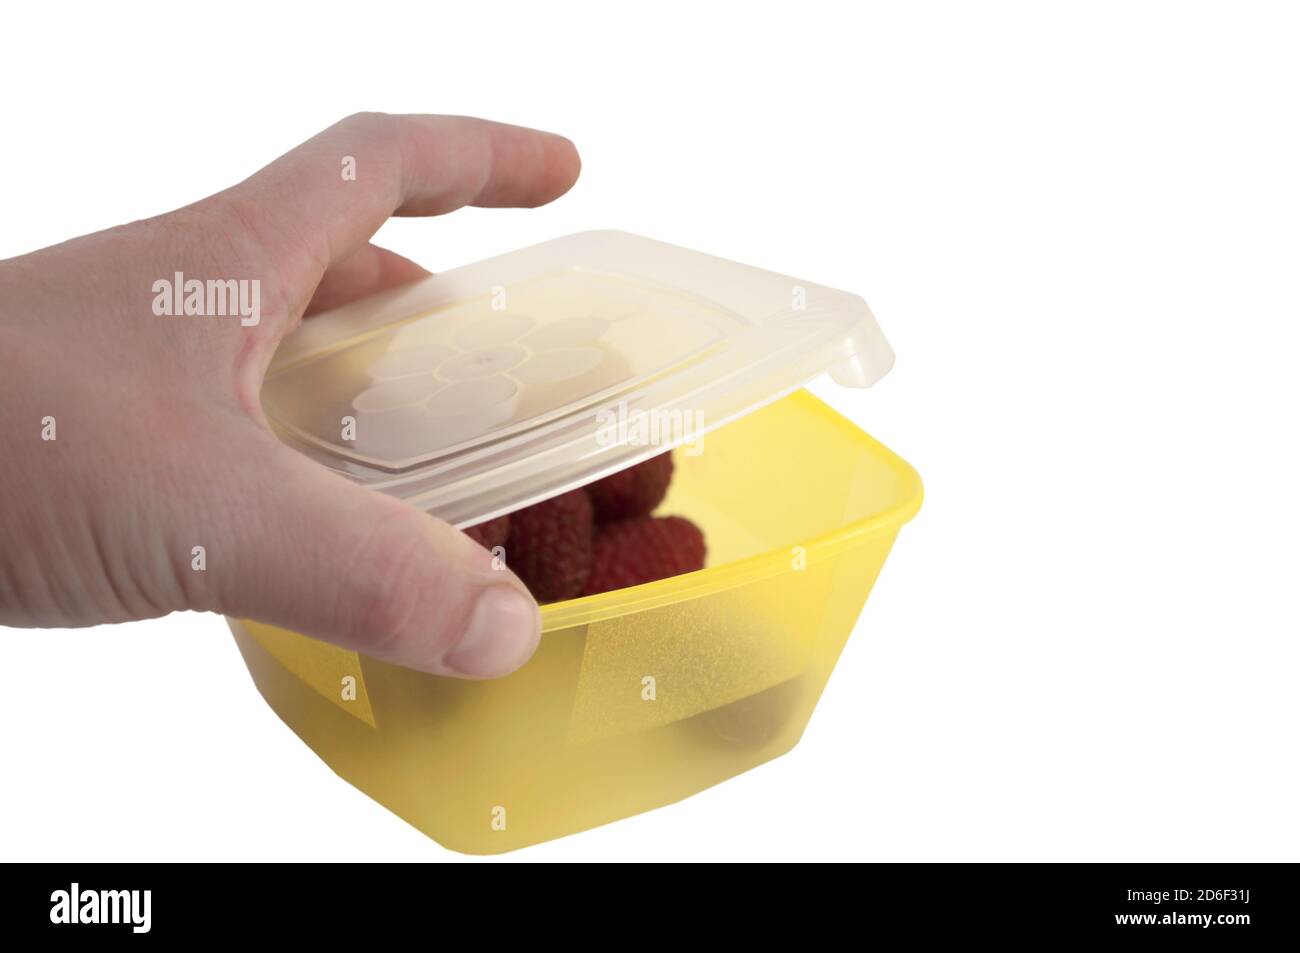 La mano femminile copre il coperchio di una scatola per il pranzo con lamponi, cibo sano sulla strada, isolato su uno sfondo bianco Foto Stock